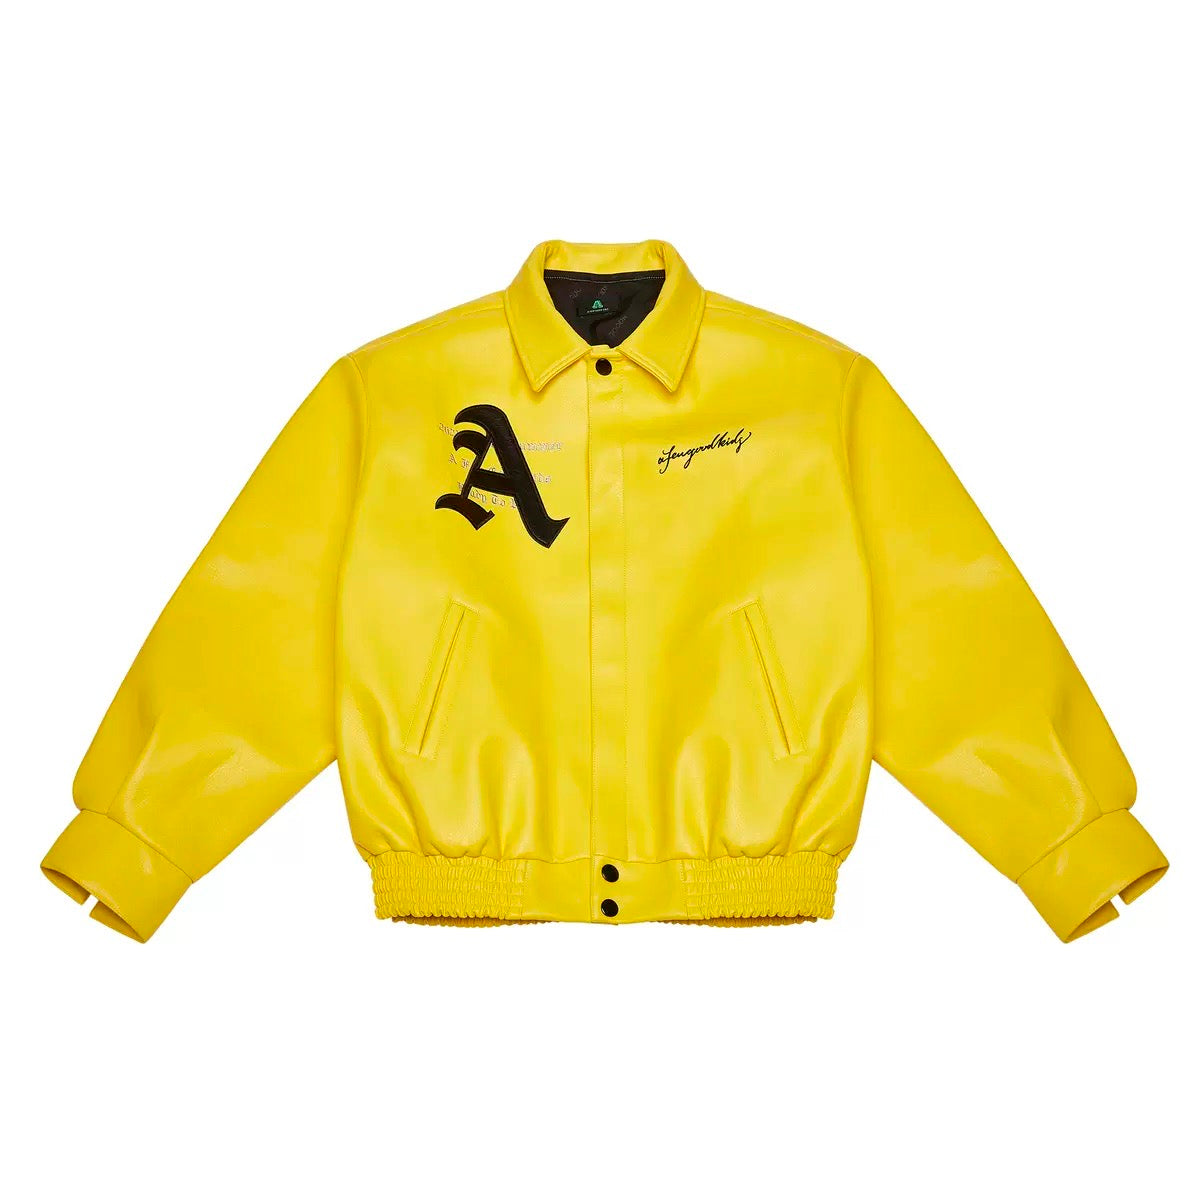 Varsity Ferrari yellow jacket